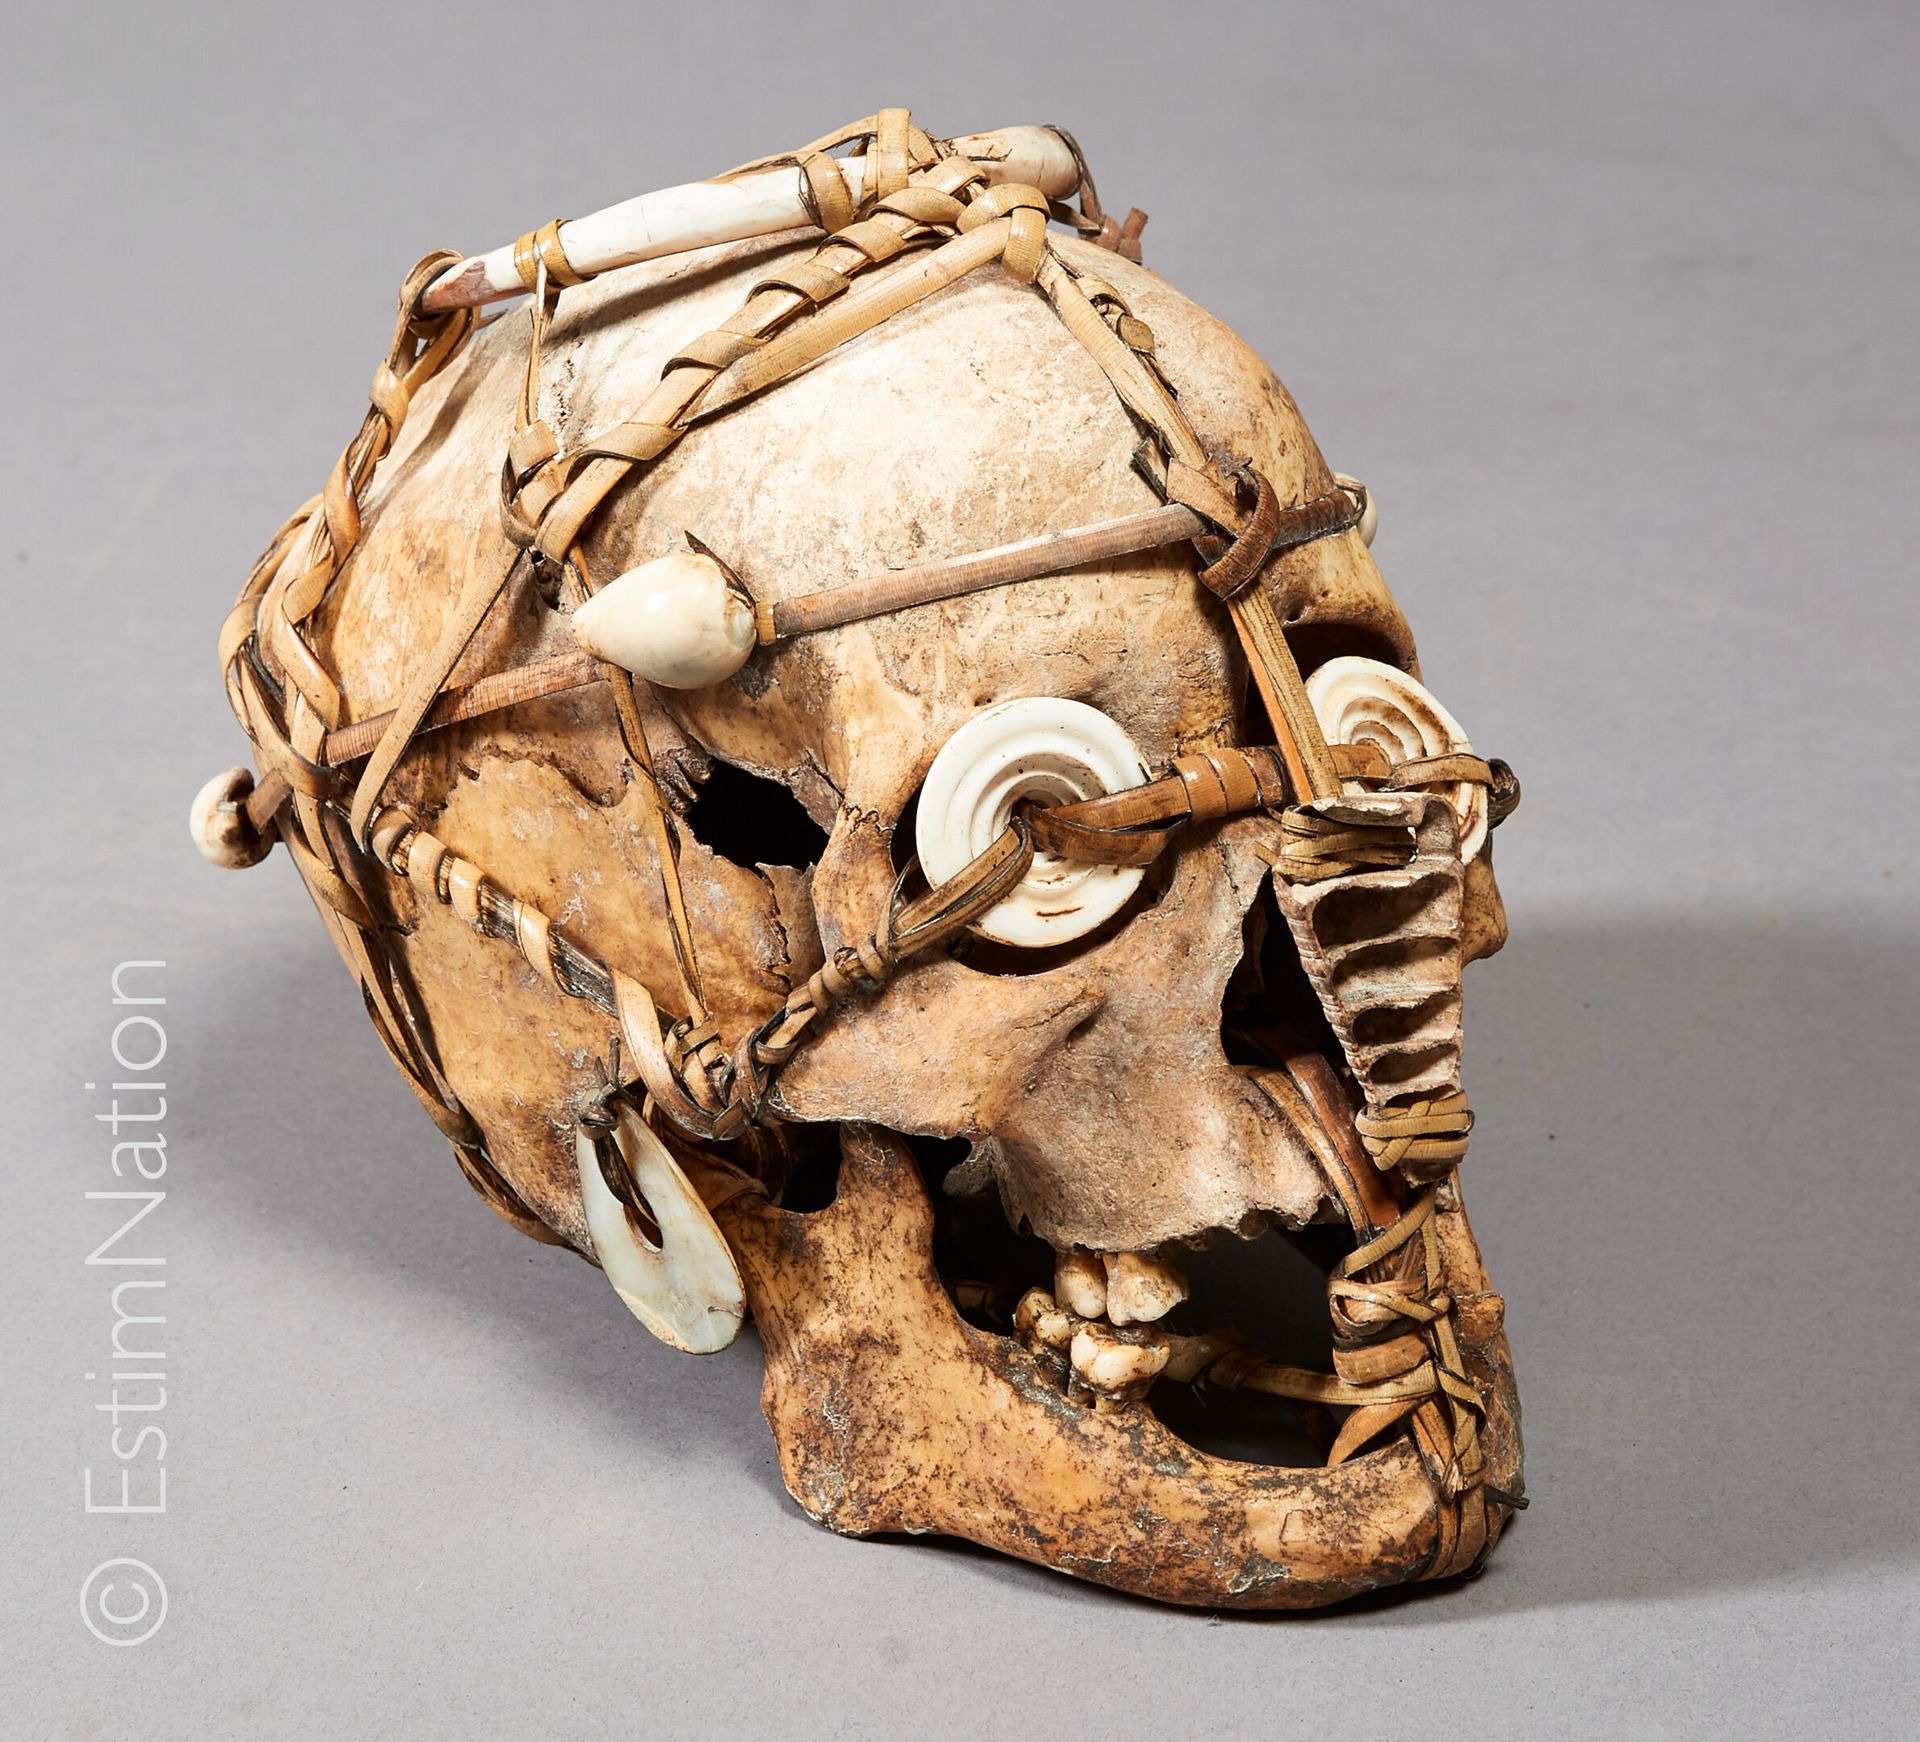 ARCHIPEL DES ÎLES SALOMON Archipel des Iles SALOMON



Crâne d'ancêtre orné de c&hellip;